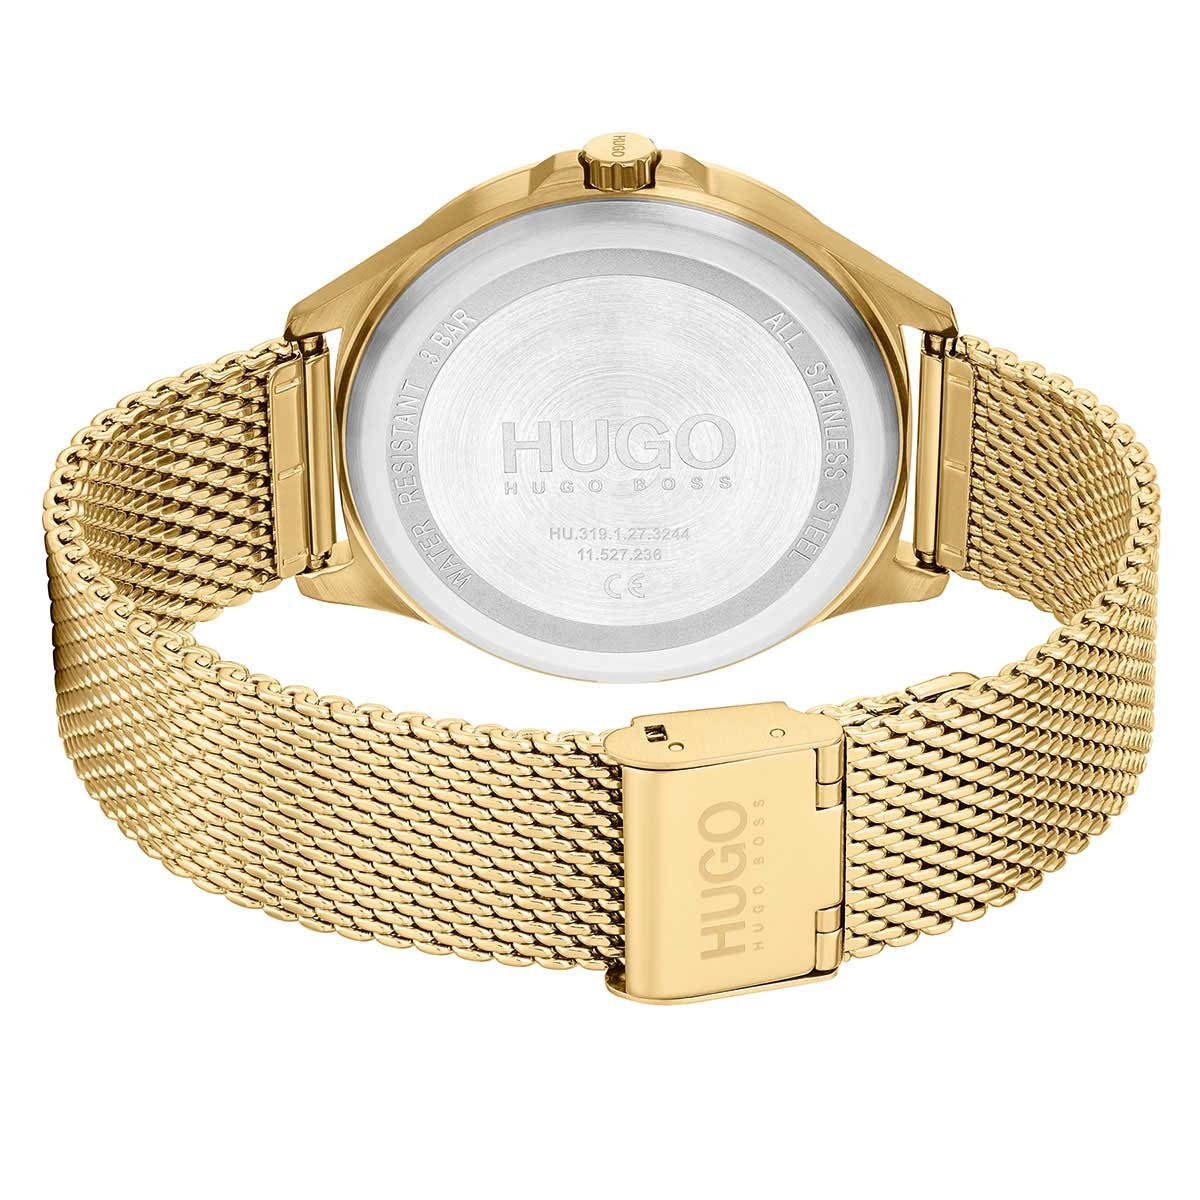 Reloj Dorado para Hombre Hugo Modelo Elo 1530178